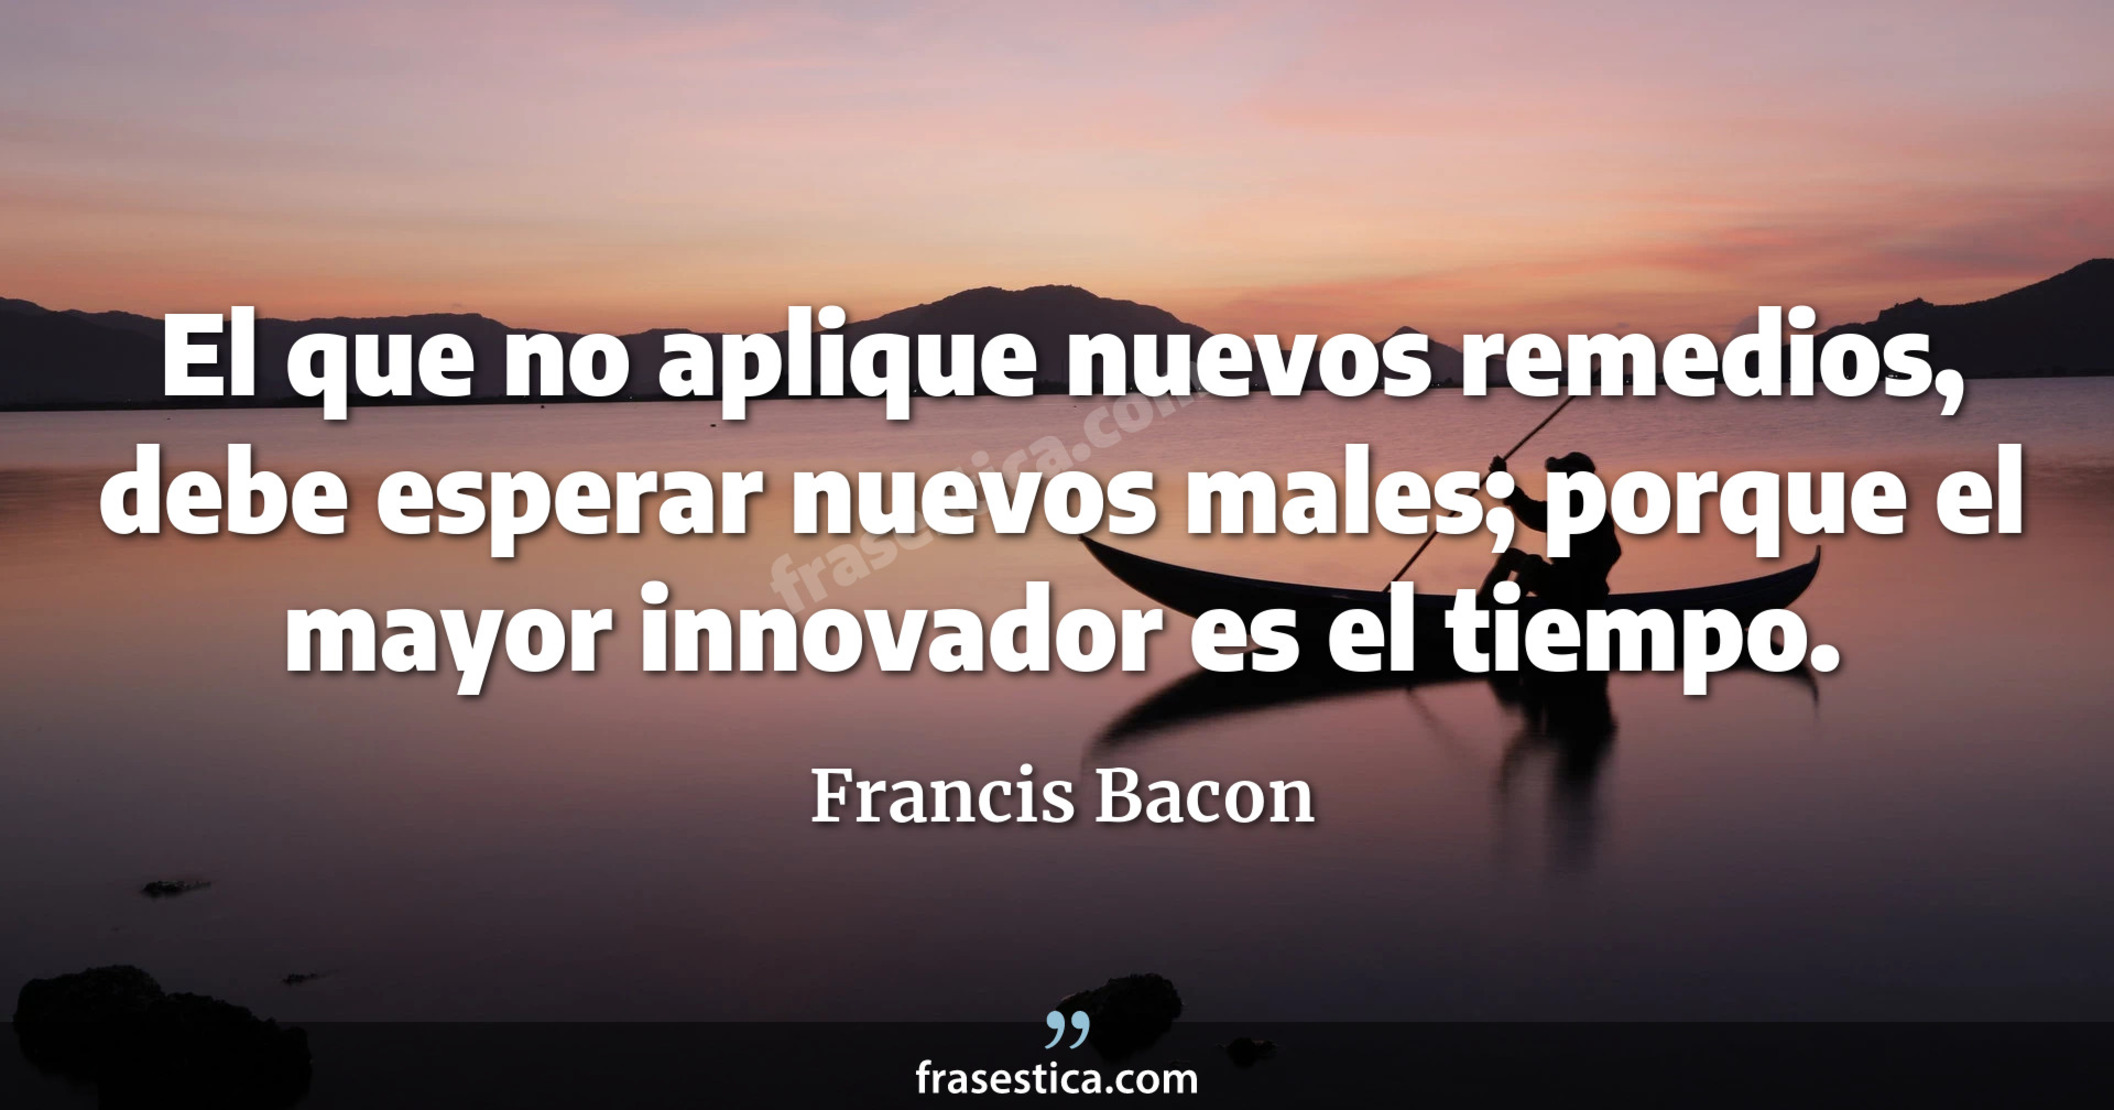 El que no aplique nuevos remedios, debe esperar nuevos males; porque el mayor innovador es el tiempo. - Francis Bacon